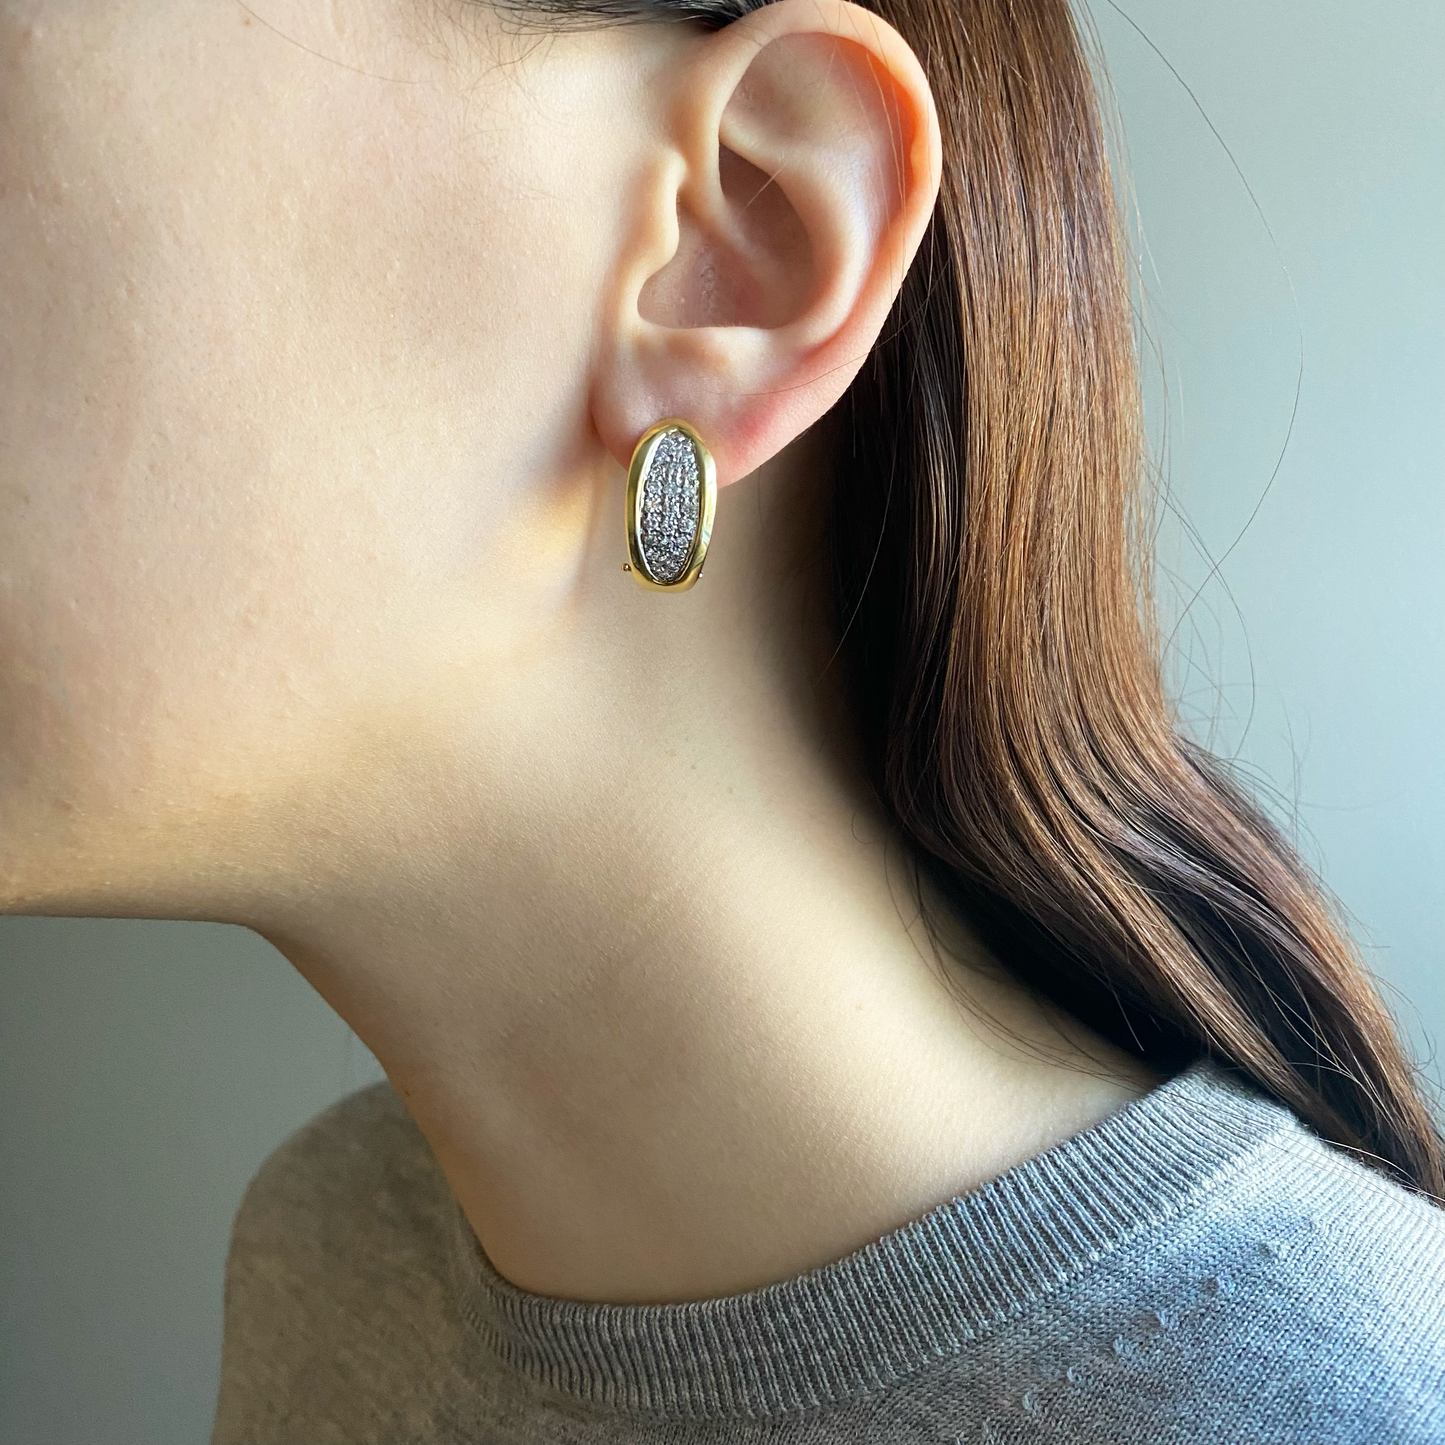 1980s 18KT Yellow Gold Diamond Earrings worn on ear